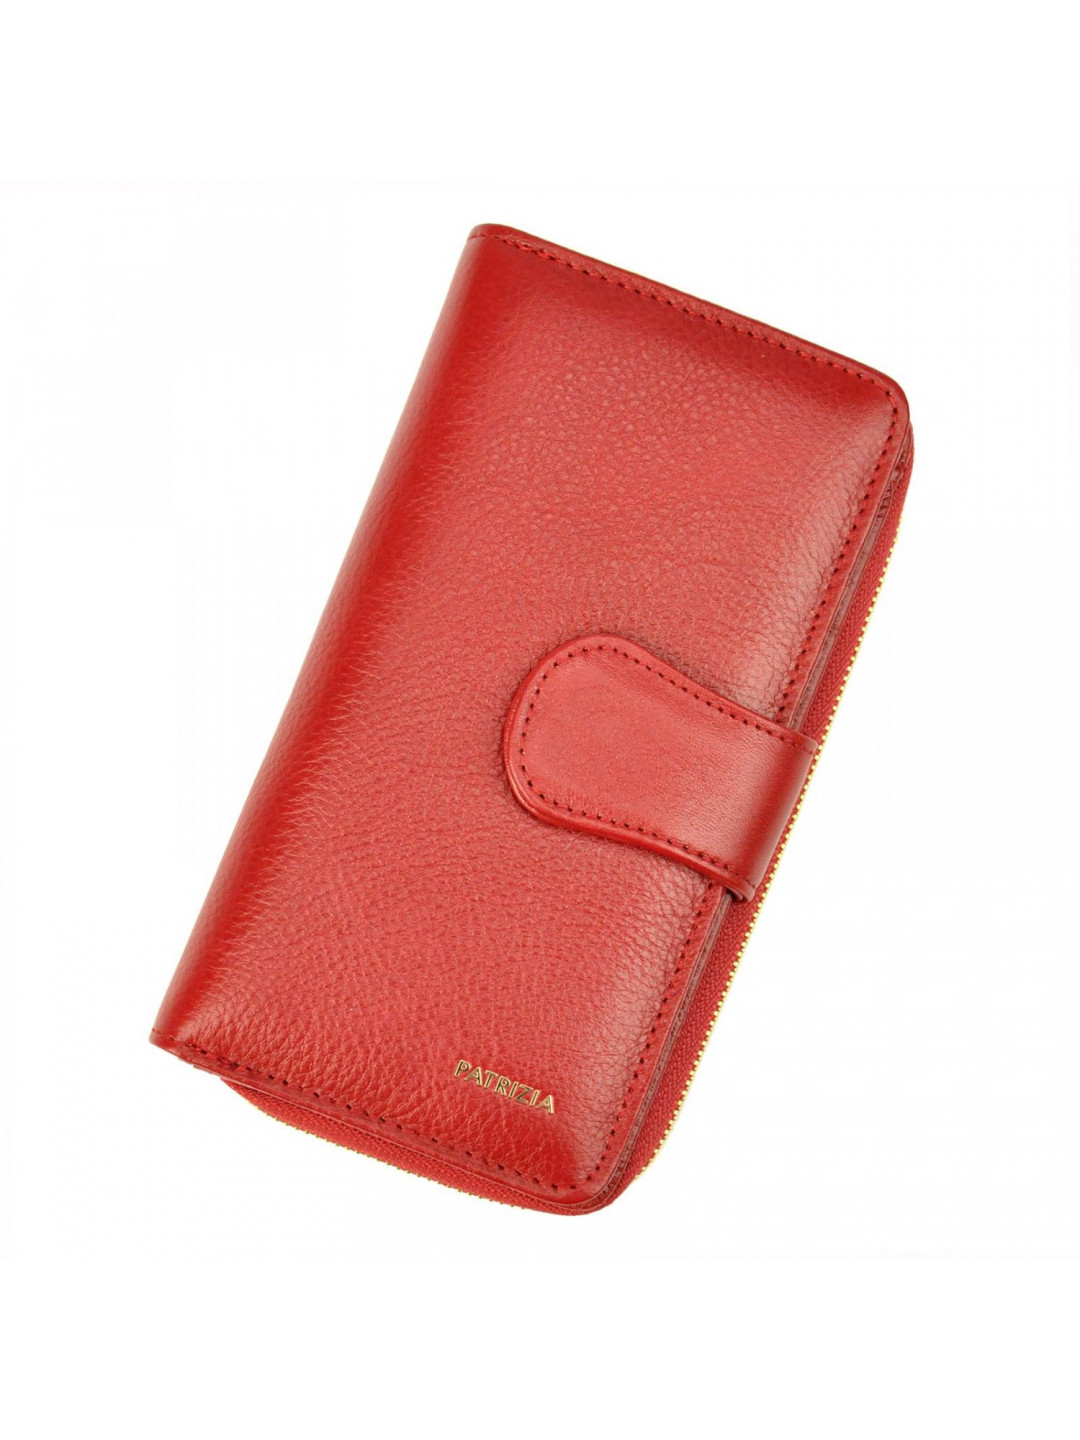 Dámská kožená peněženka červená – Patrizia Clorinda